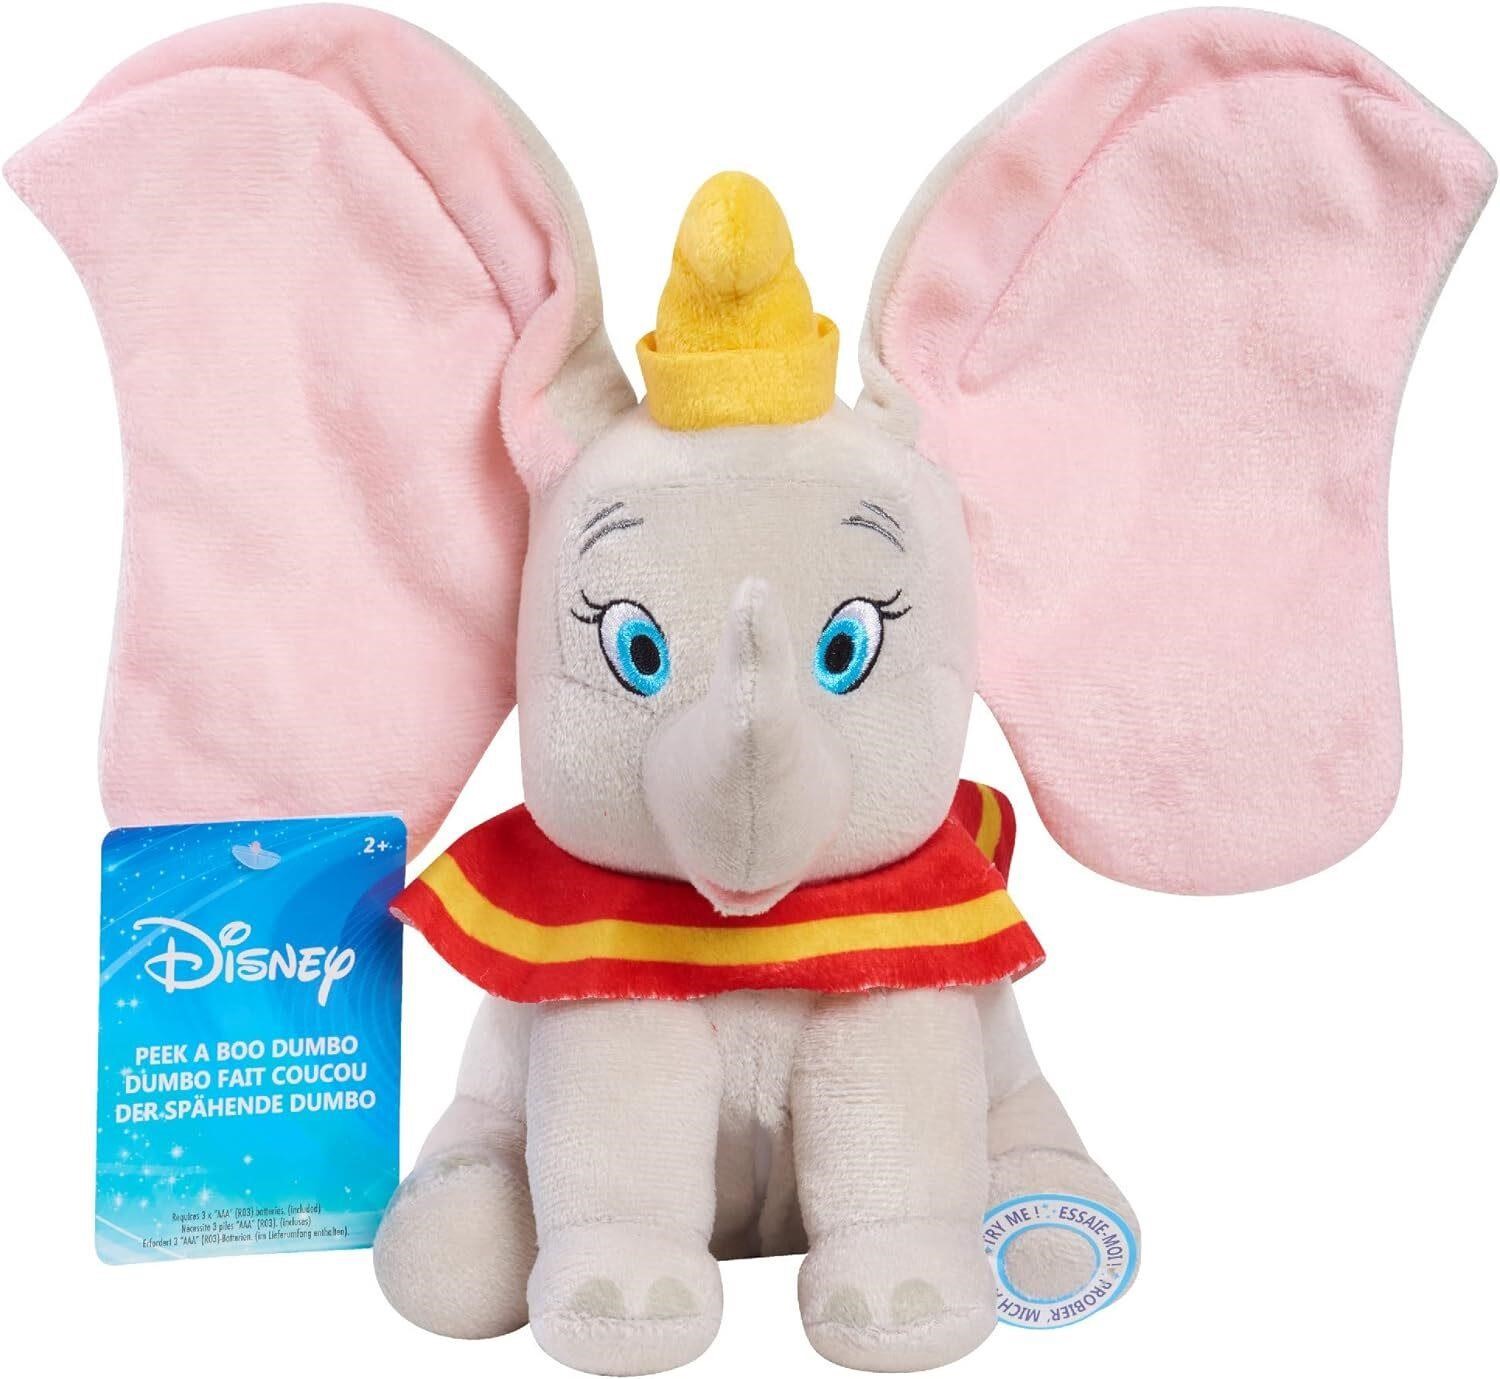 10.5-inch Dumbo Plush  Disney Elephant Toy